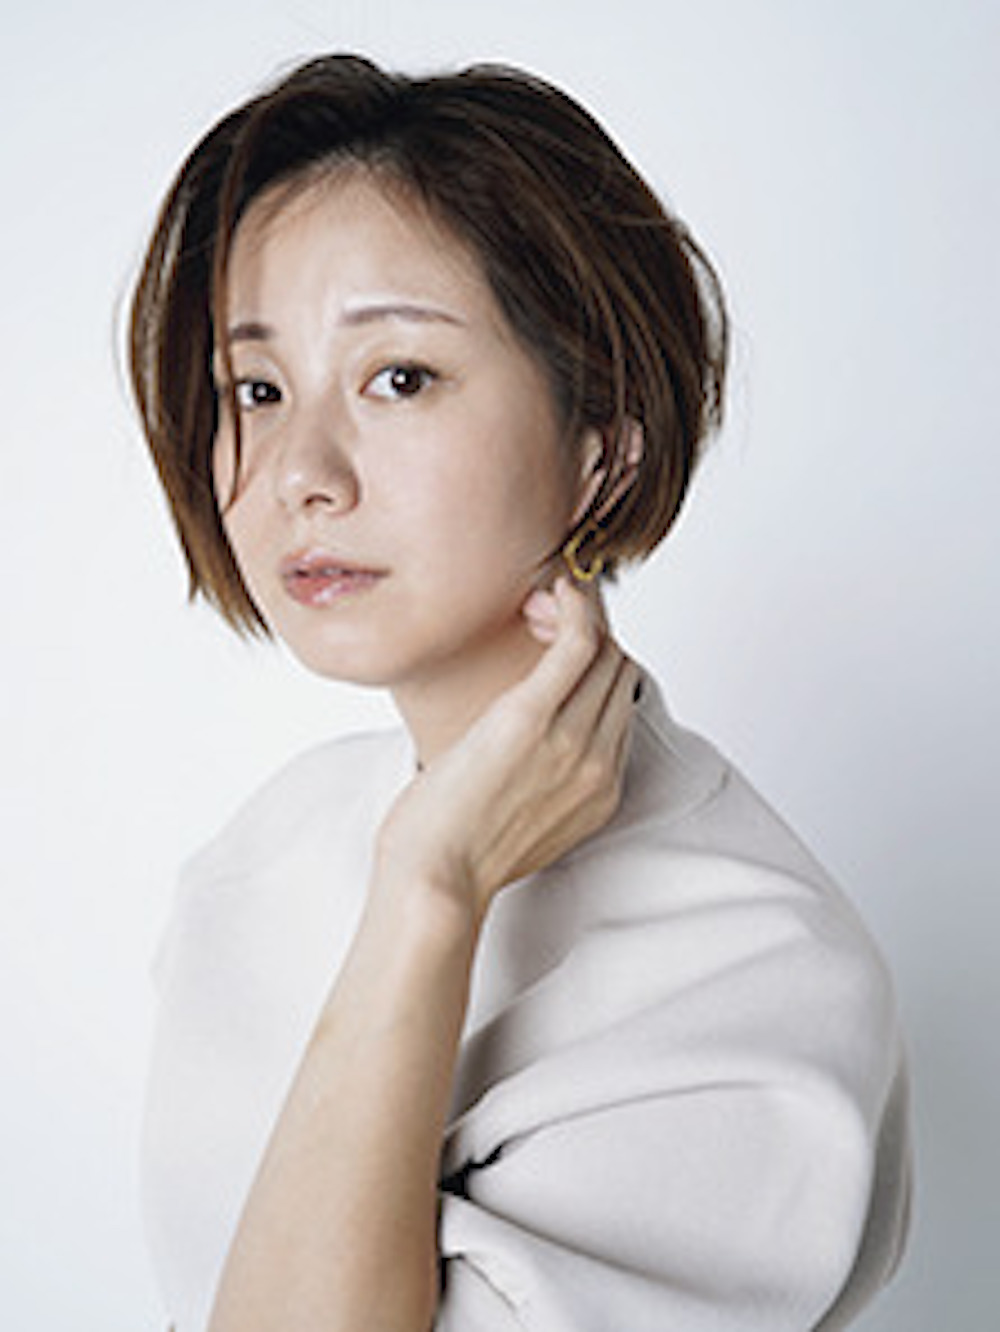 田中美保 たなか・みほ／東京都生まれ。女性誌を中心にモデルとして活躍。雑誌やWebメ ディアでの連載、ファッションブランド「RM STANDARD」の共同プロデュース など、活動は多岐にわたる。インスタグラム（@miho12tanaka）も人気。